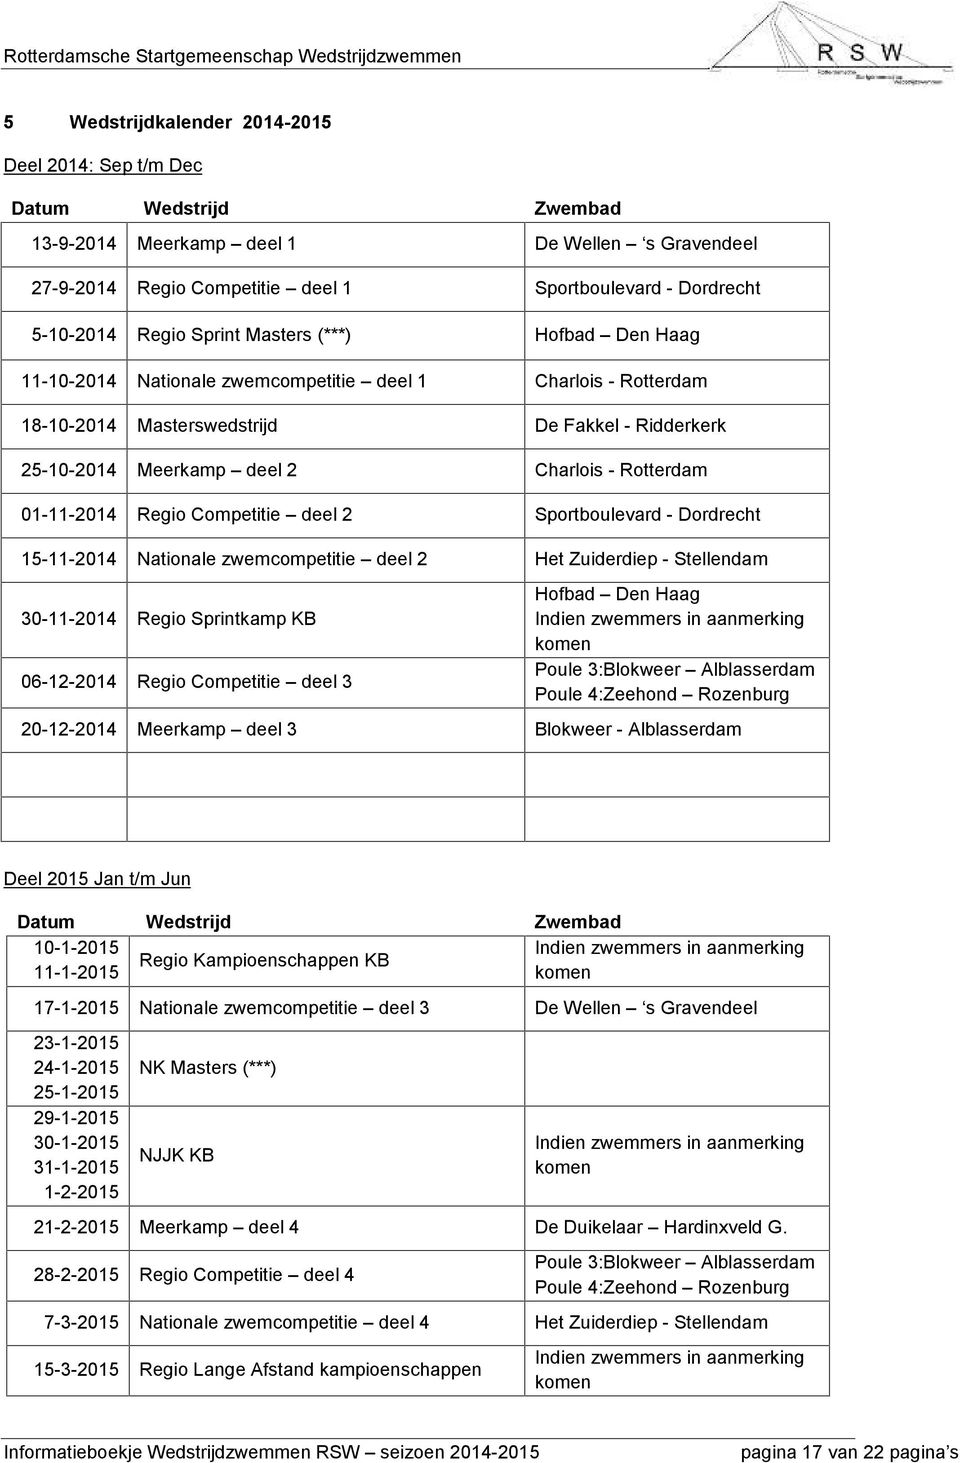 Rotterdam 01-11-2014 Regio Competitie deel 2 Sportboulevard - Dordrecht 15-11-2014 Nationale zwemcompetitie deel 2 Het Zuiderdiep - Stellendam 30-11-2014 Regio Sprintkamp KB 06-12-2014 Regio